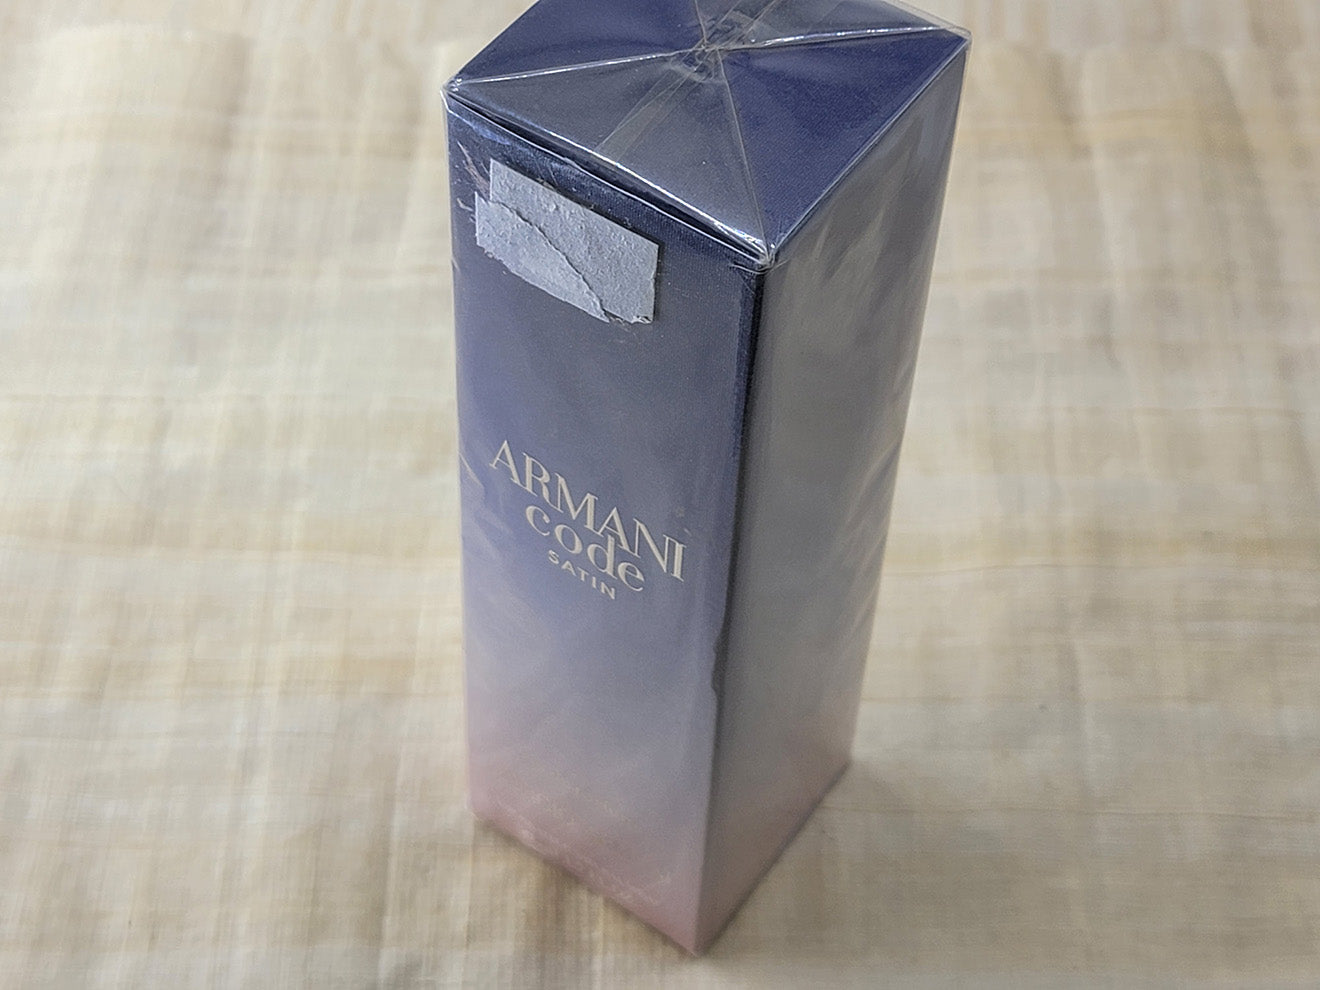 Armani Code Satin Giorgio Armani for women EDP Spray 50 ml 1.7 oz, Rare, Vintage, Sealed